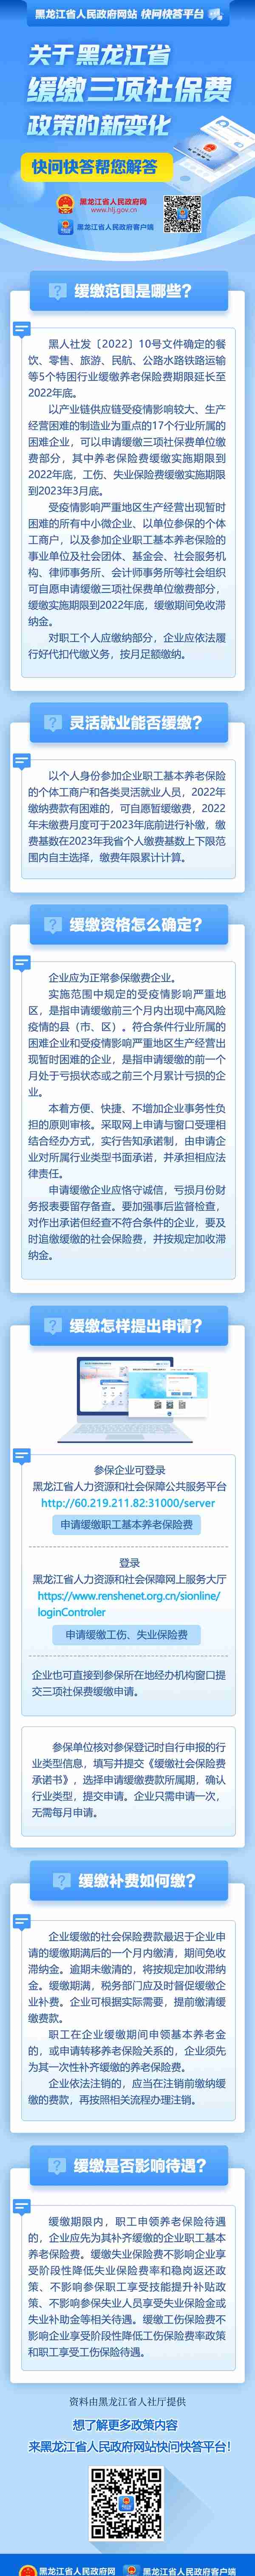 关于黑龙江省缓缴三项社保费政策的新变化，快问快答帮您解答！